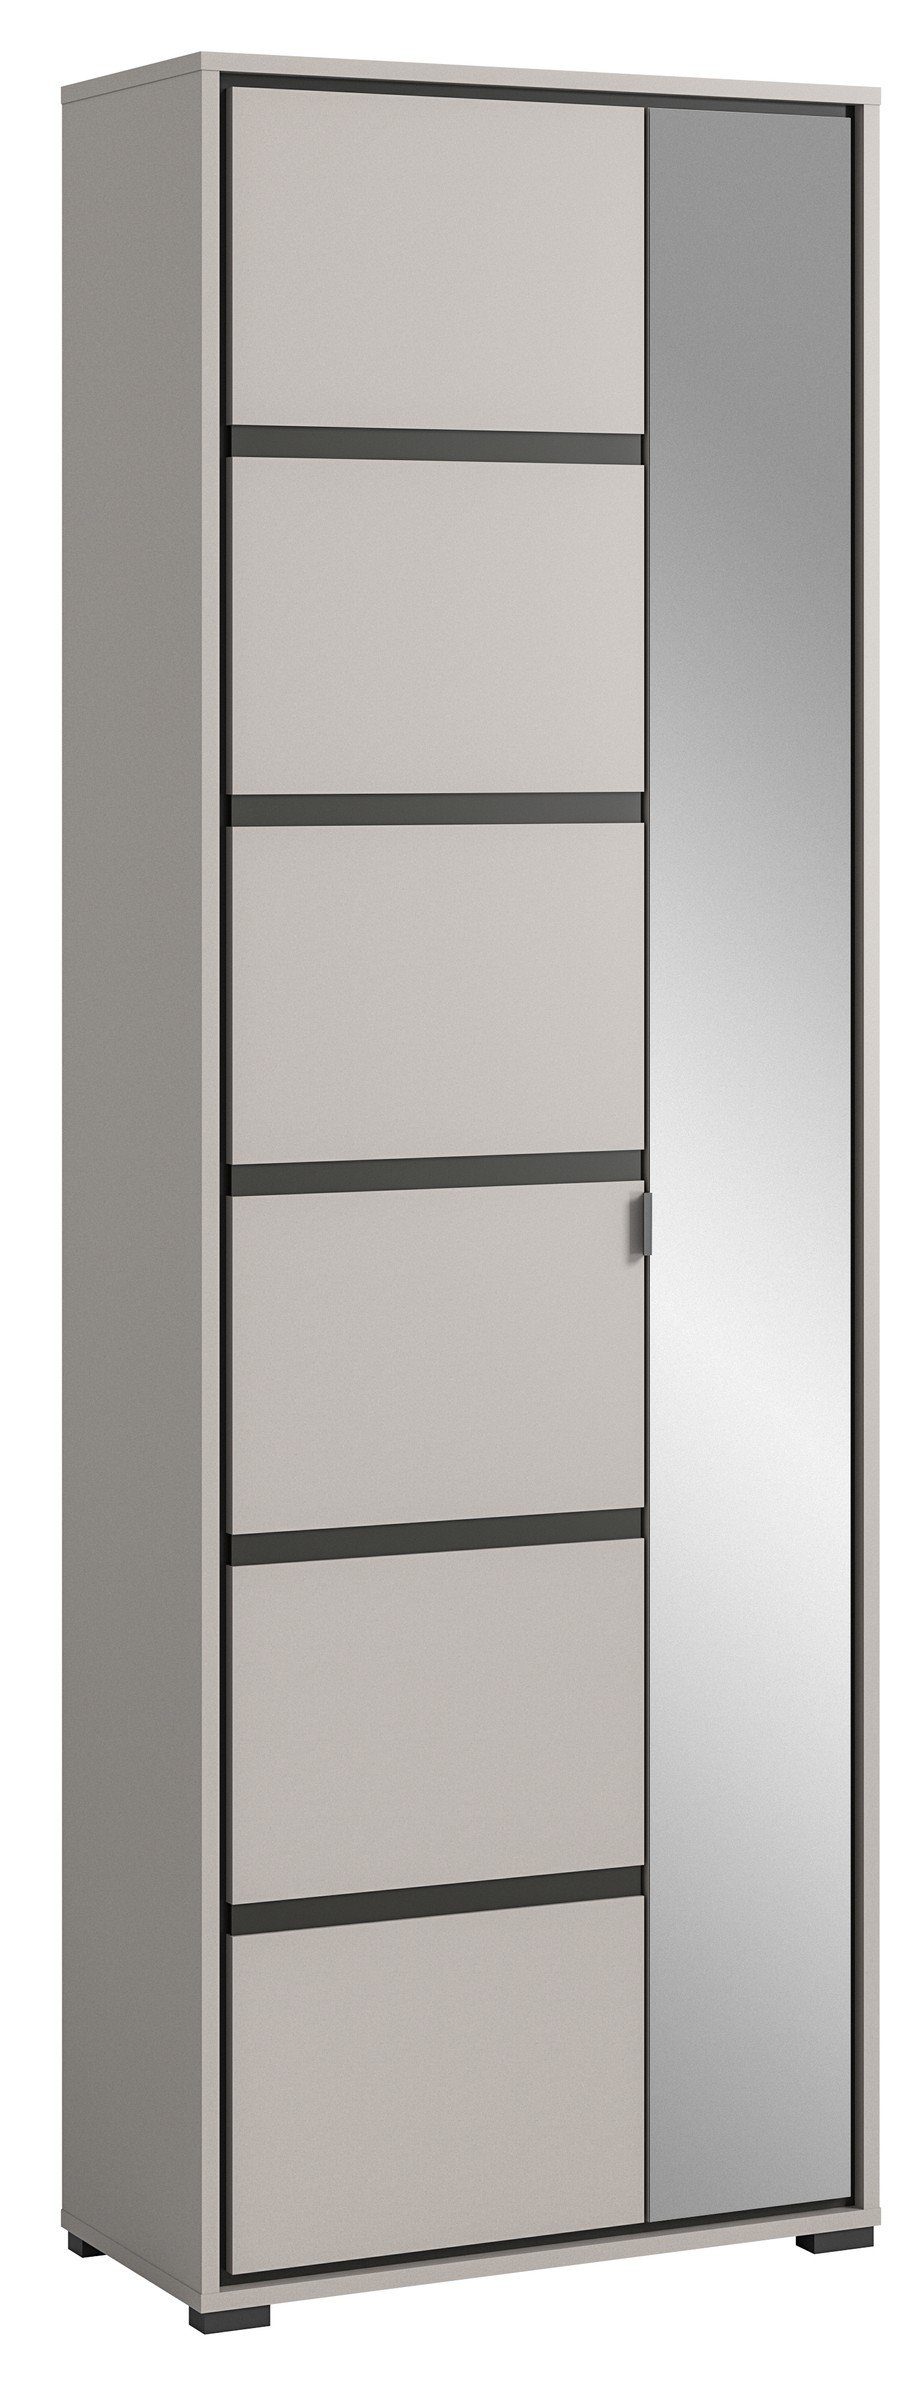 möbelando Garderobenschrank Jaru in grau mit 2 Türen und 6 Fächern. Abmessungen (BxHxT) 65x196x37 cm | Garderobenschränke